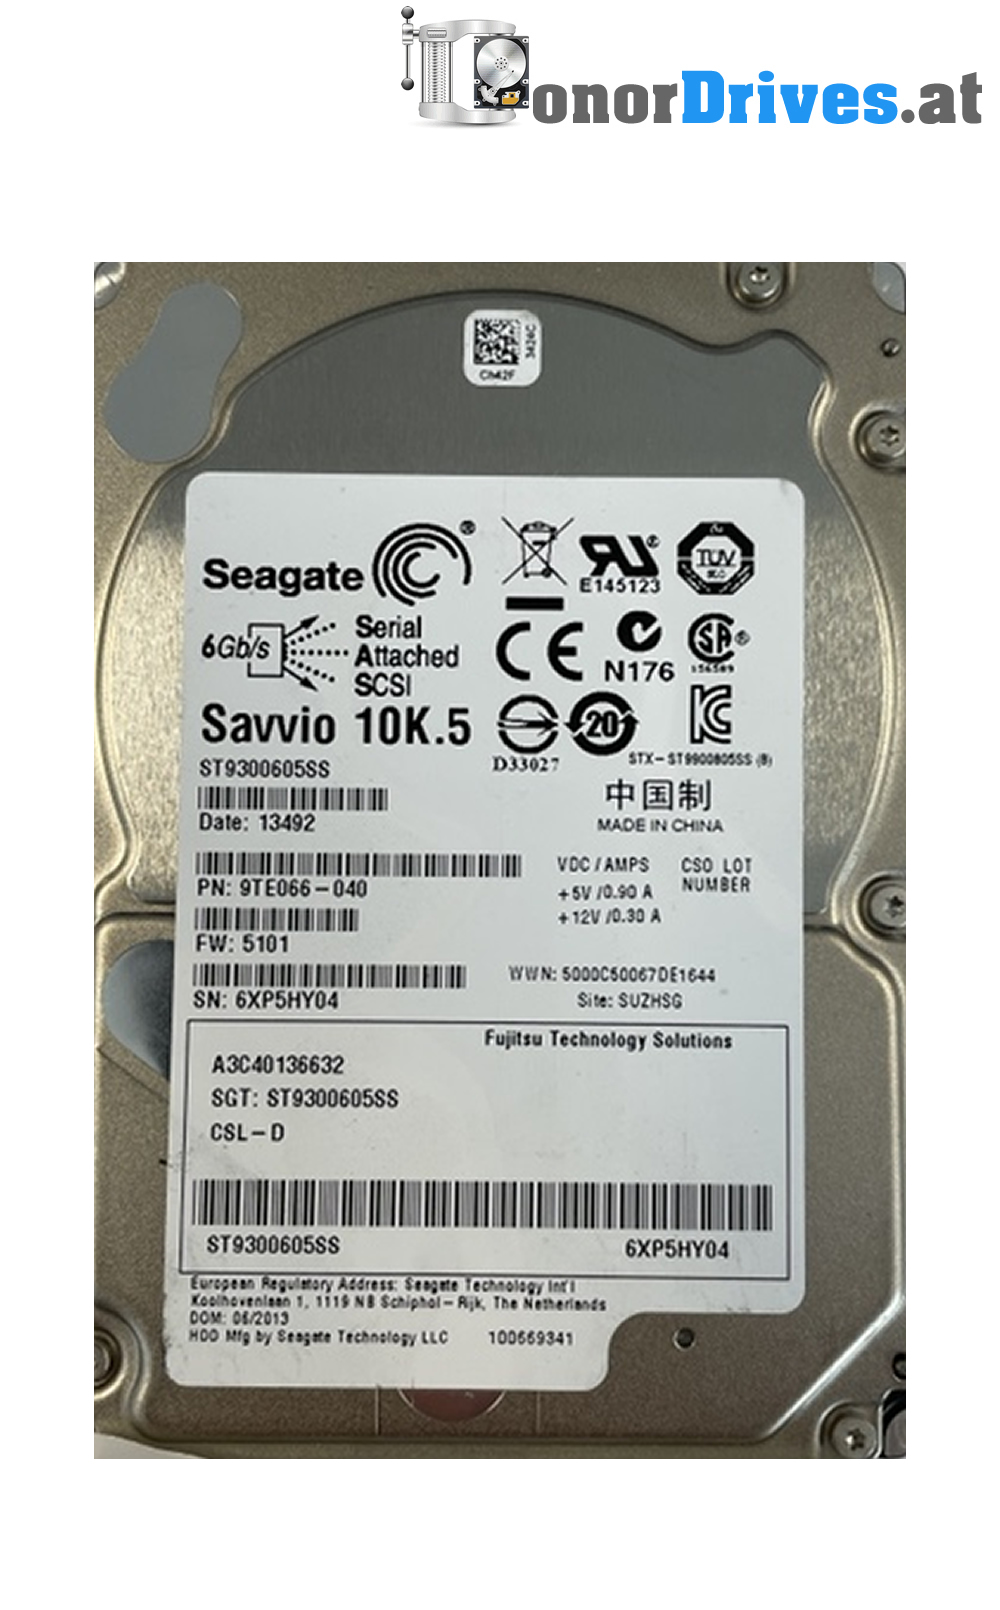 Seagate - ST300MM0006 - SAS - 300 GB - 9WE066-040 - PCB. 100726960 Rev. A